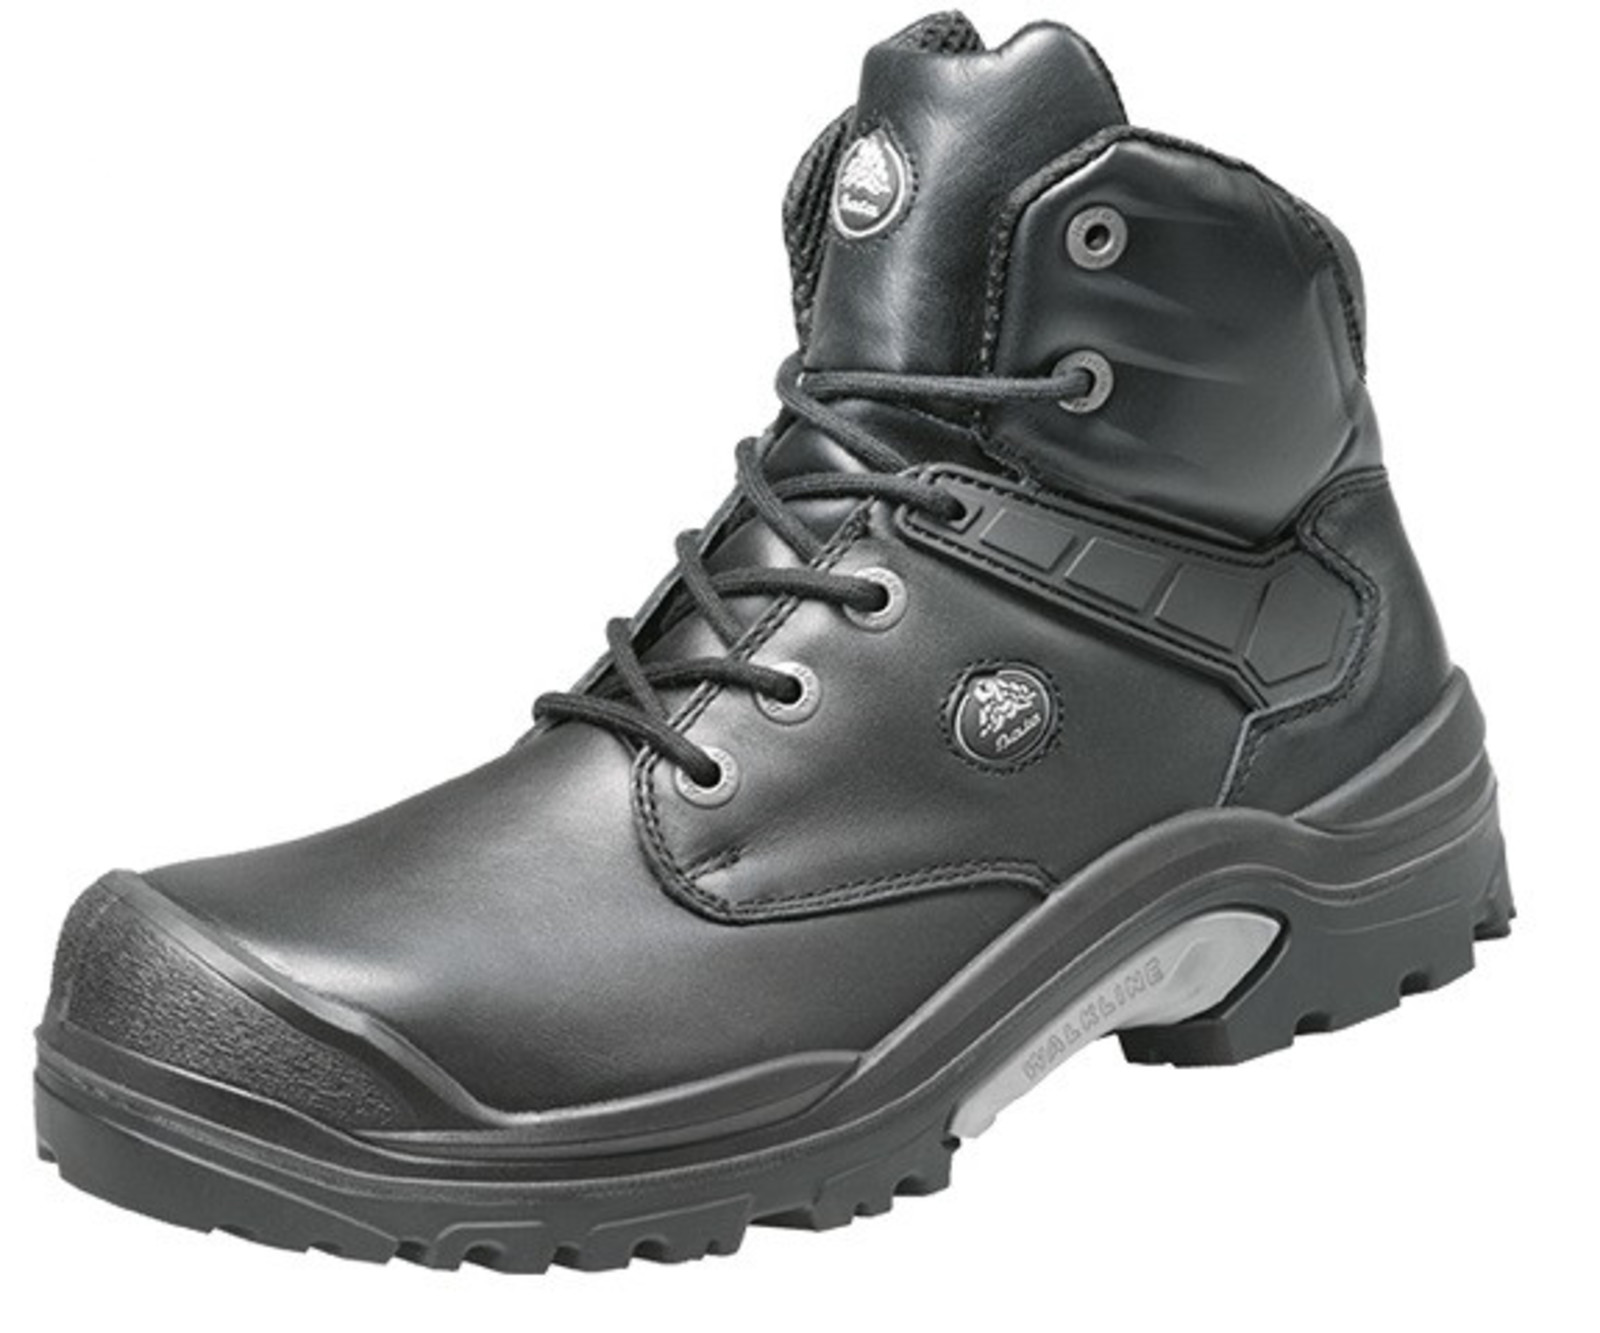 Bezpečnostná obuv Baťa PWR S3 - veľkosť: 45, farba: čierna